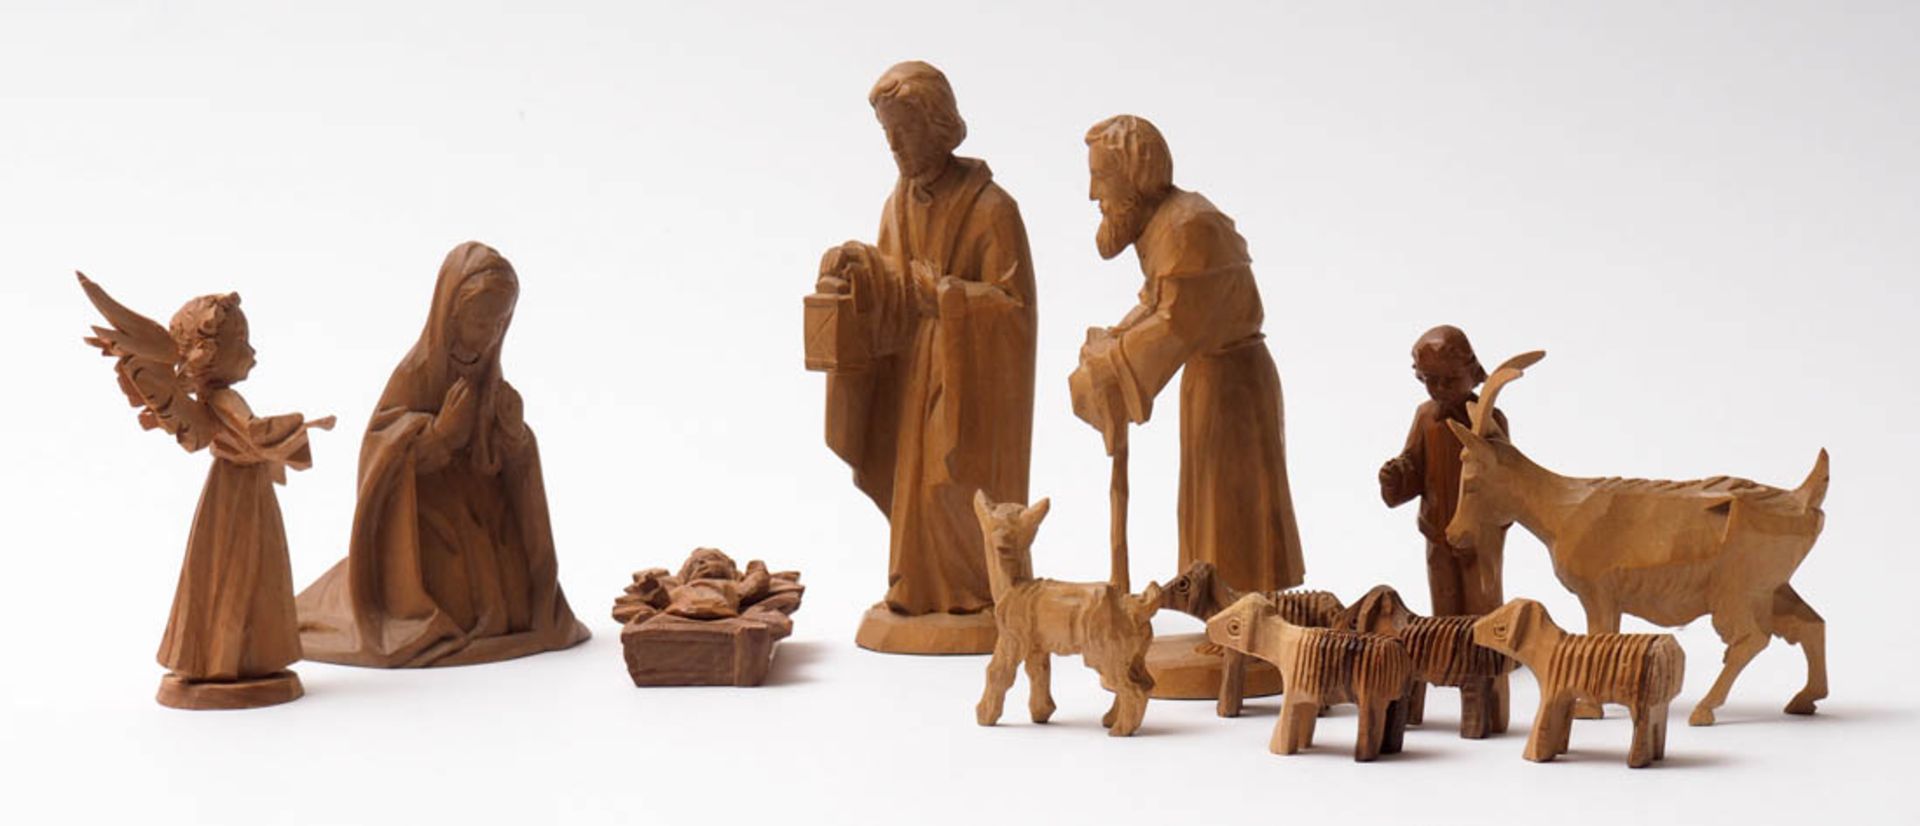 Konvolut Krippenfiguren Josef, Maria, Jesuskind, zwei Hirten, Ziege und fünf Schafe. Birnbaumholz, - Bild 2 aus 6